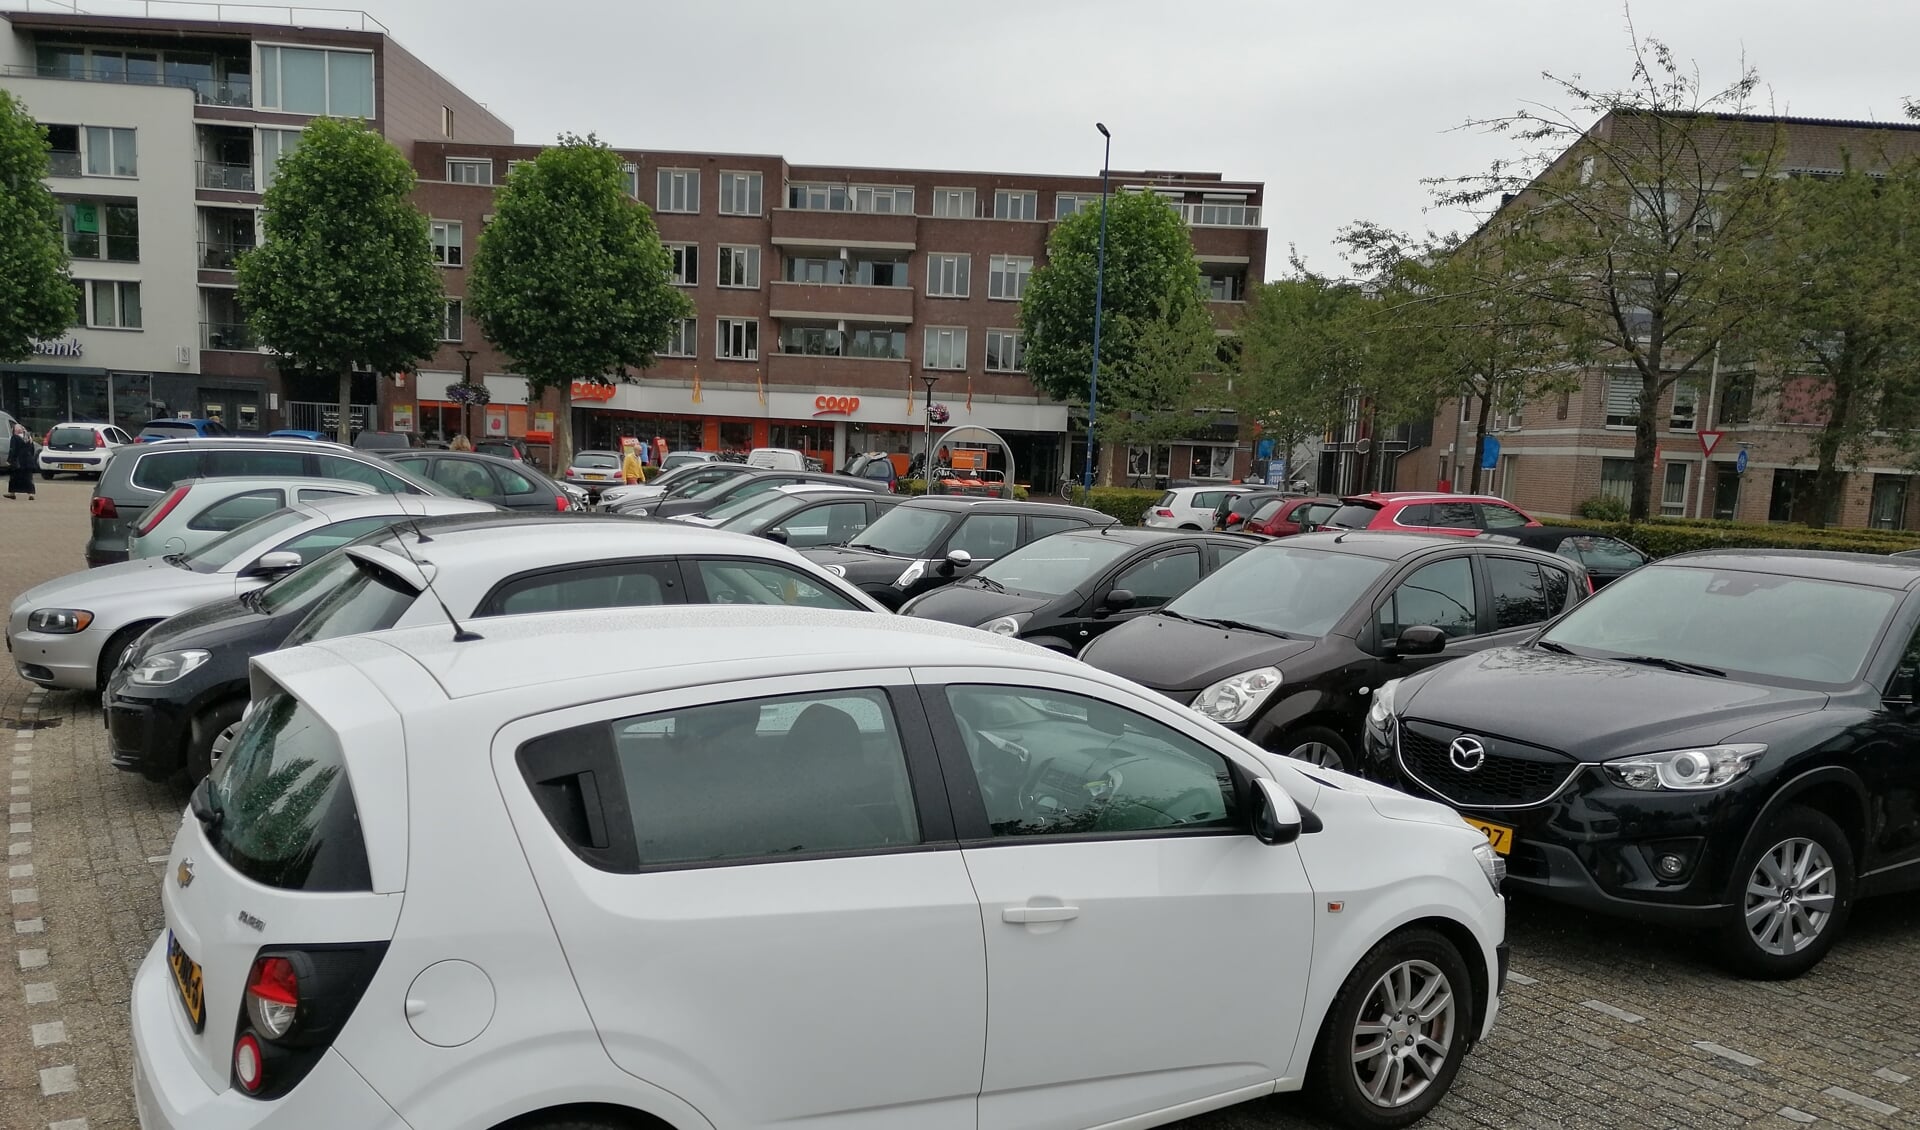 Automobilisten moeten weer betalen voor parkeren in Osse centrum